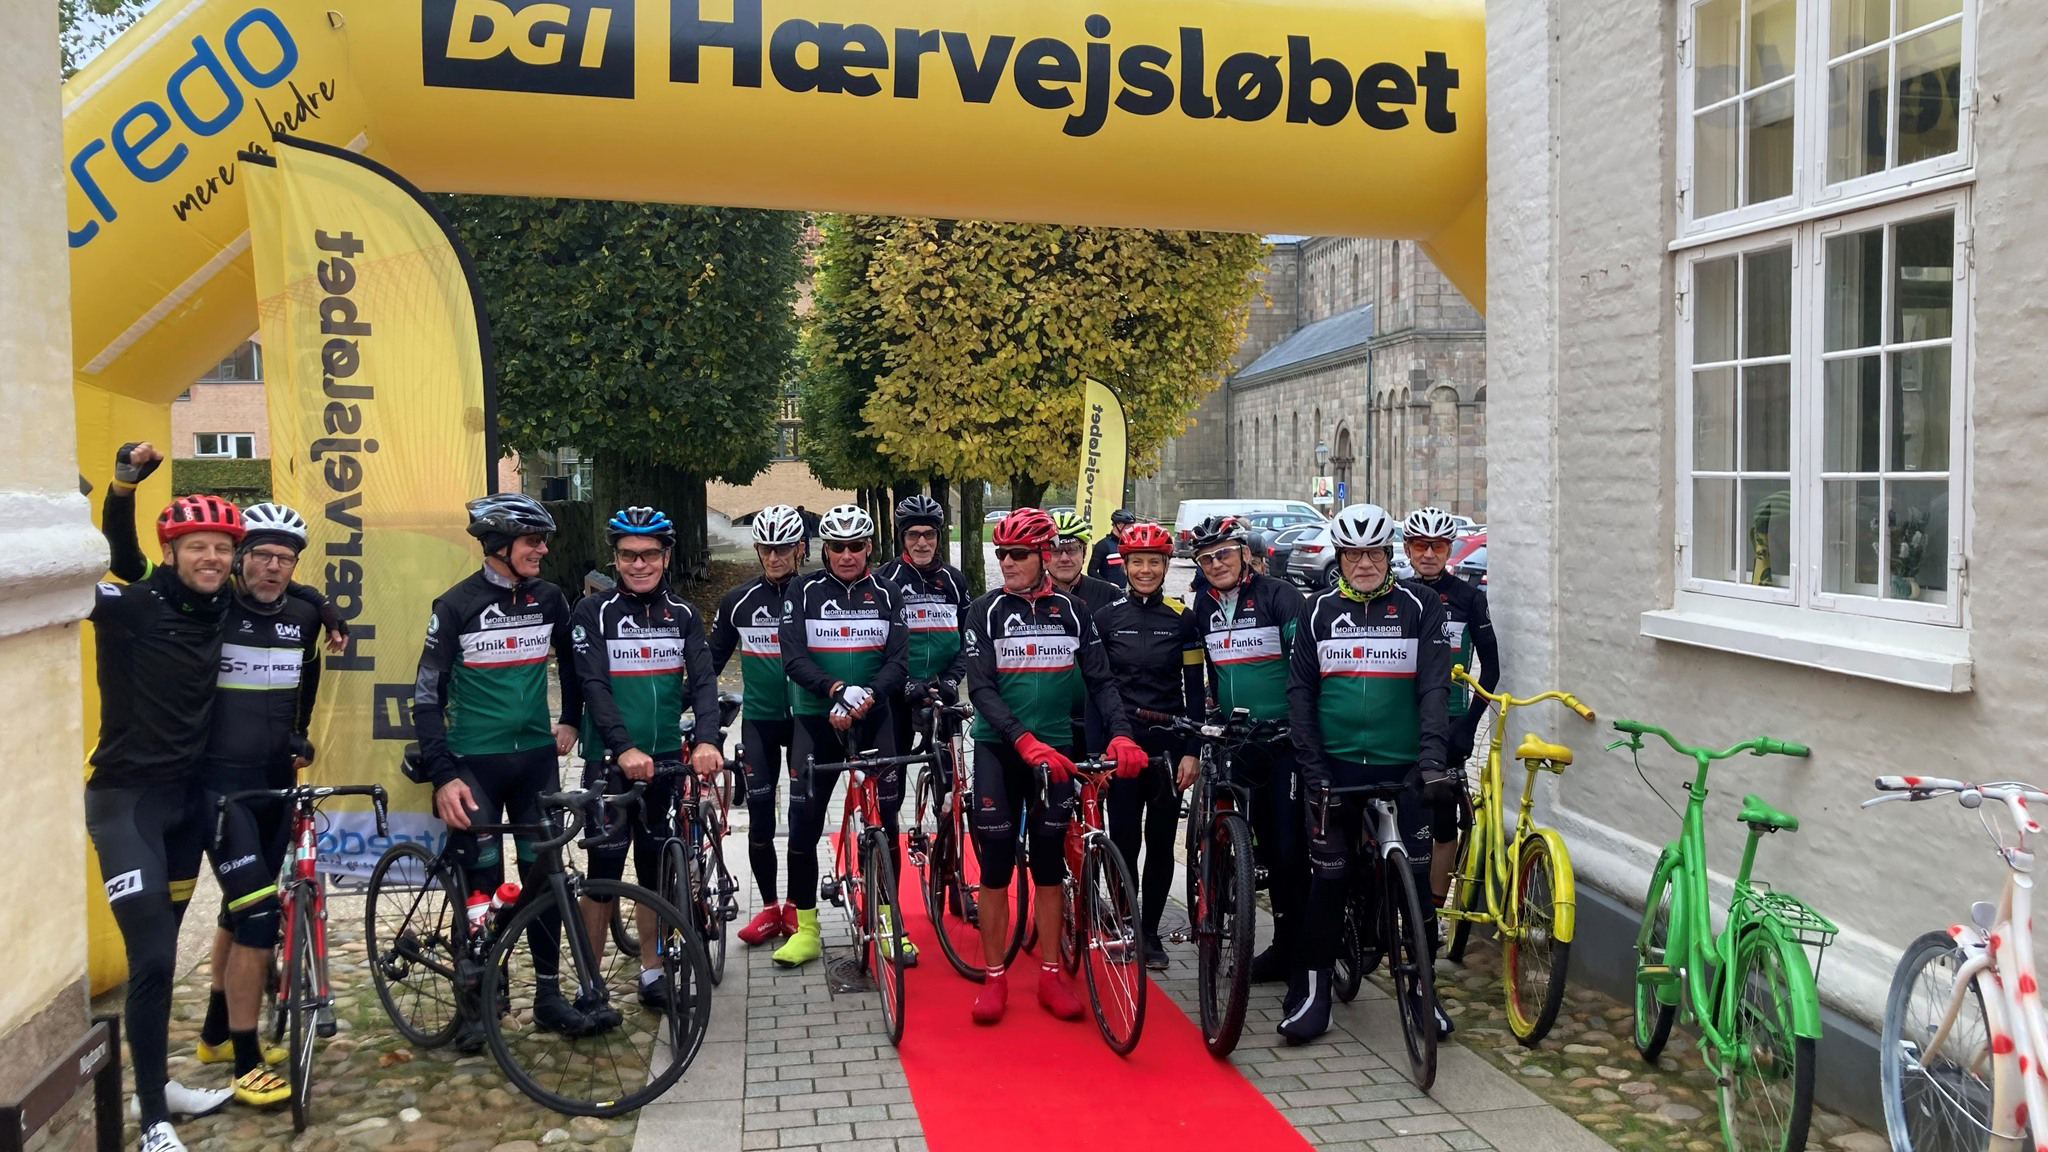 UnikFunkis er mangeårig stolt sponser for Cykel Motion Viborg.
L’Etape Danmark by Tour de France